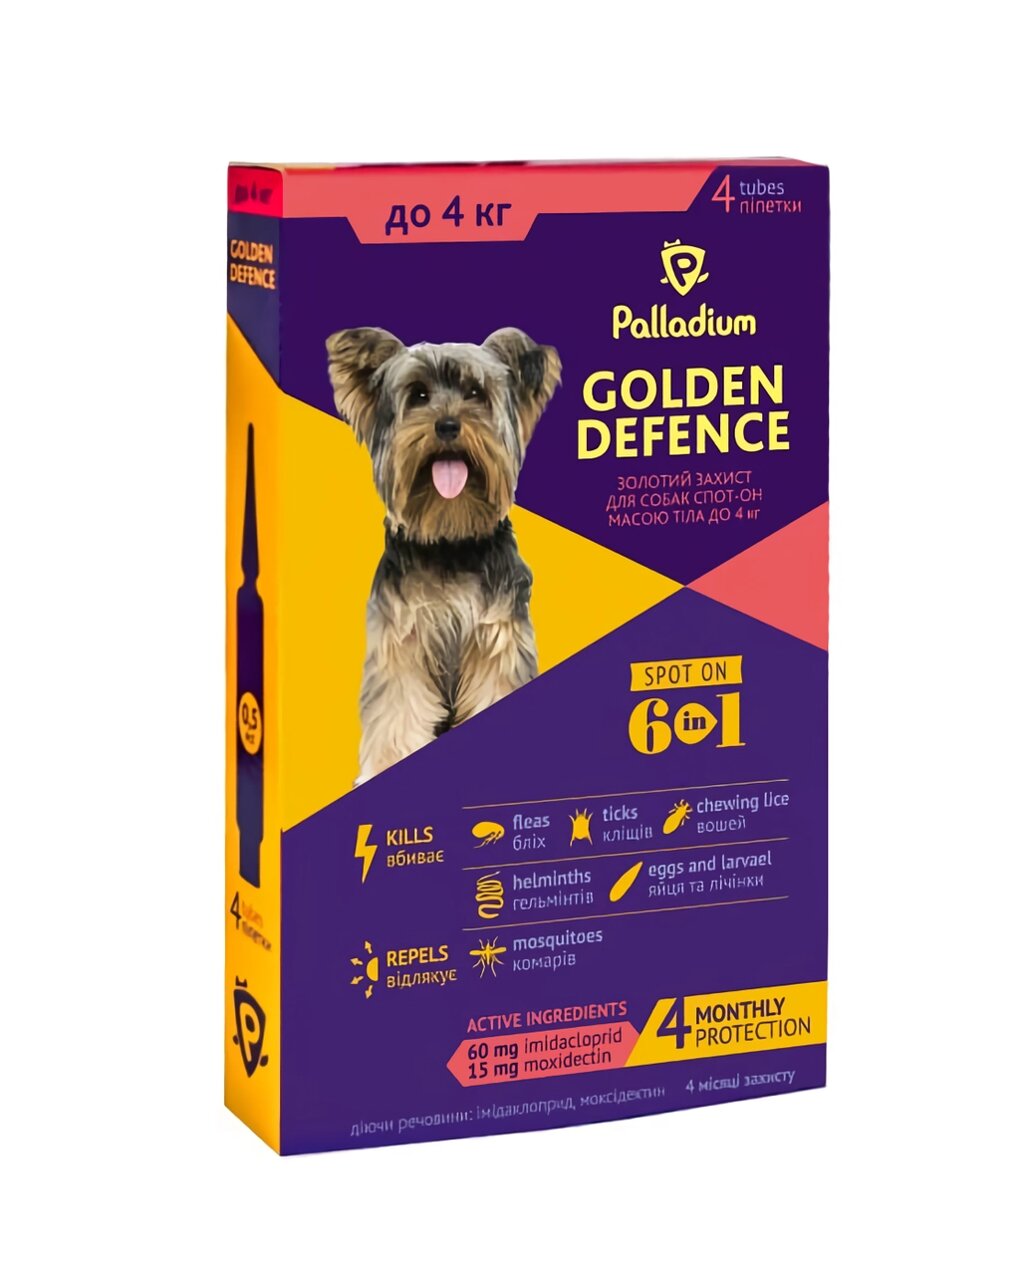 Краплі на холку Golden Defence (Голден дефенс) від паразитів для собак вагою до 4 кг 1 піпетка Palladium від компанії ZooVet - Інтернет зоомагазин самих низьких цін - фото 1